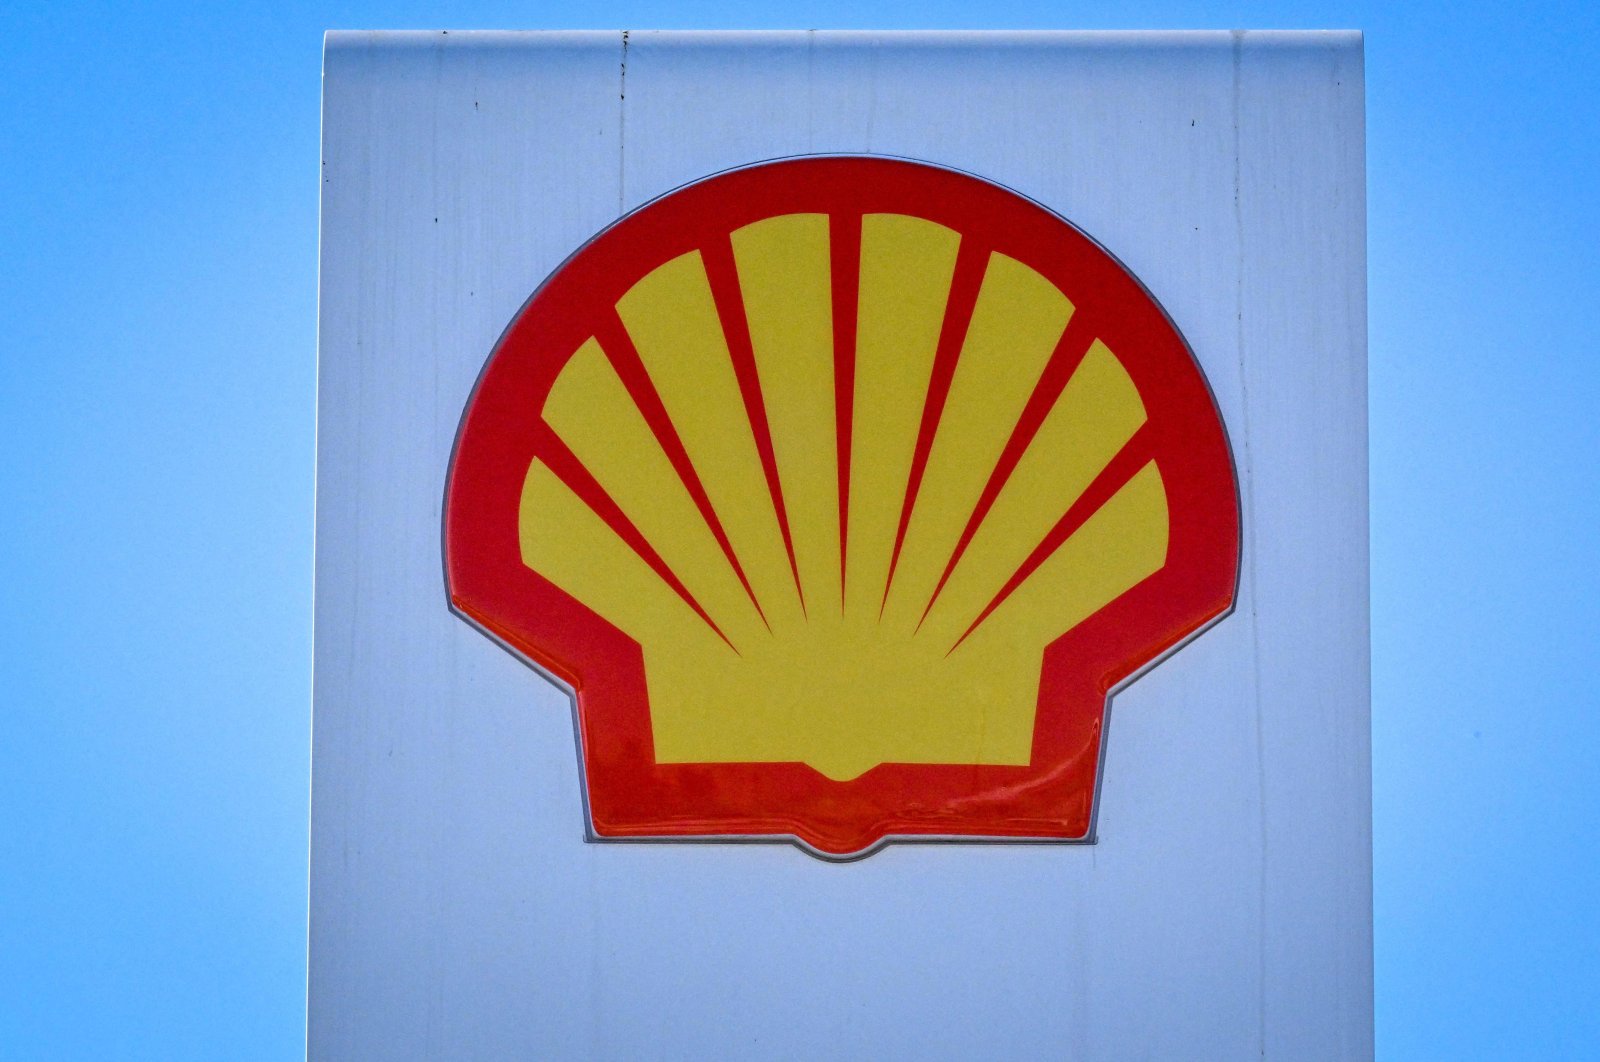 Dewan Shell dituntut karena gagal beralih dari bahan bakar fosil